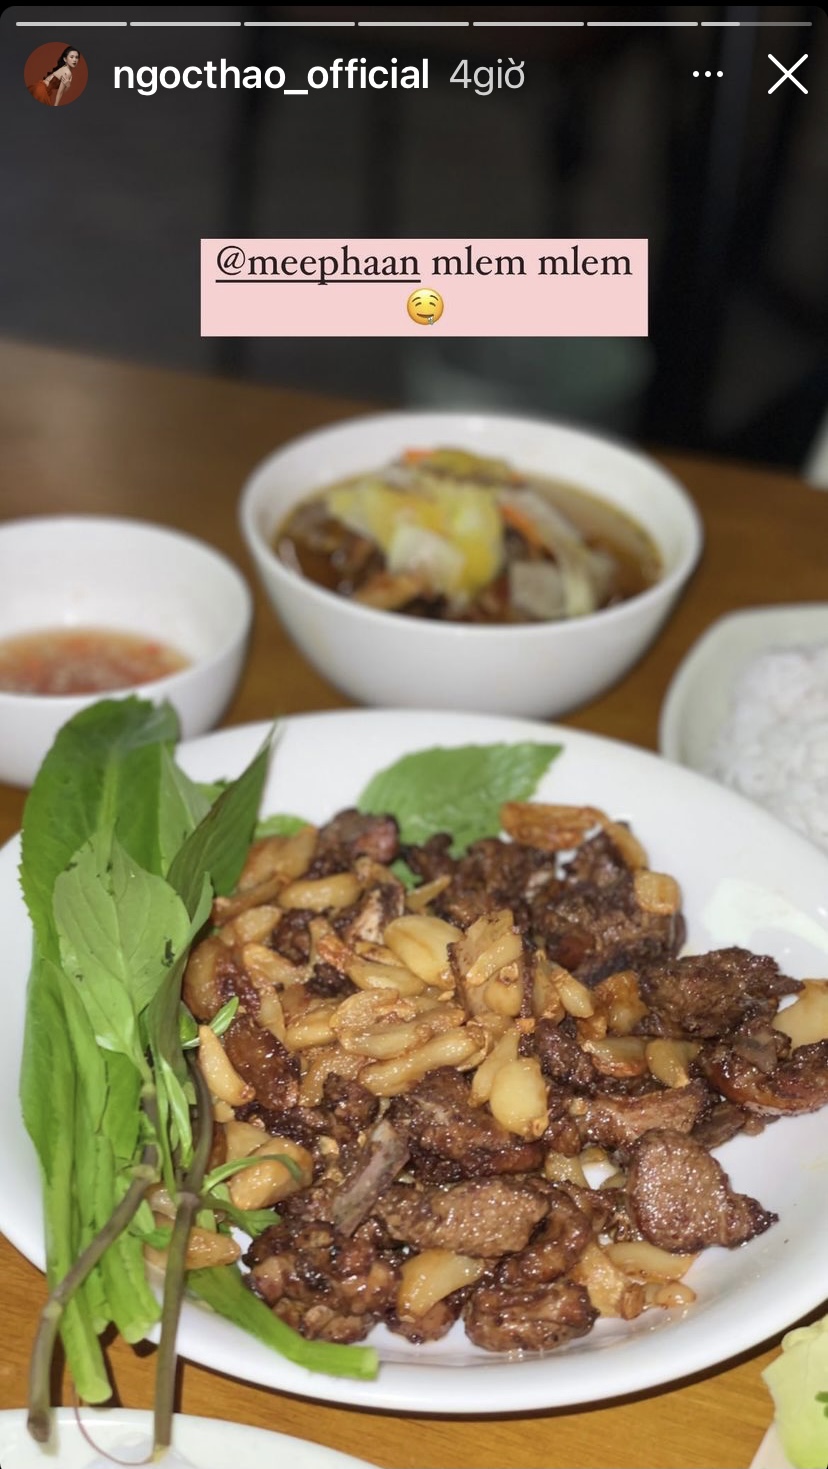 Ngoài món bún chả, Ngọc Thảo hôm nay còn có một món ăn nổi tiếng khác của Hà Nội là ngan cháy tỏi.